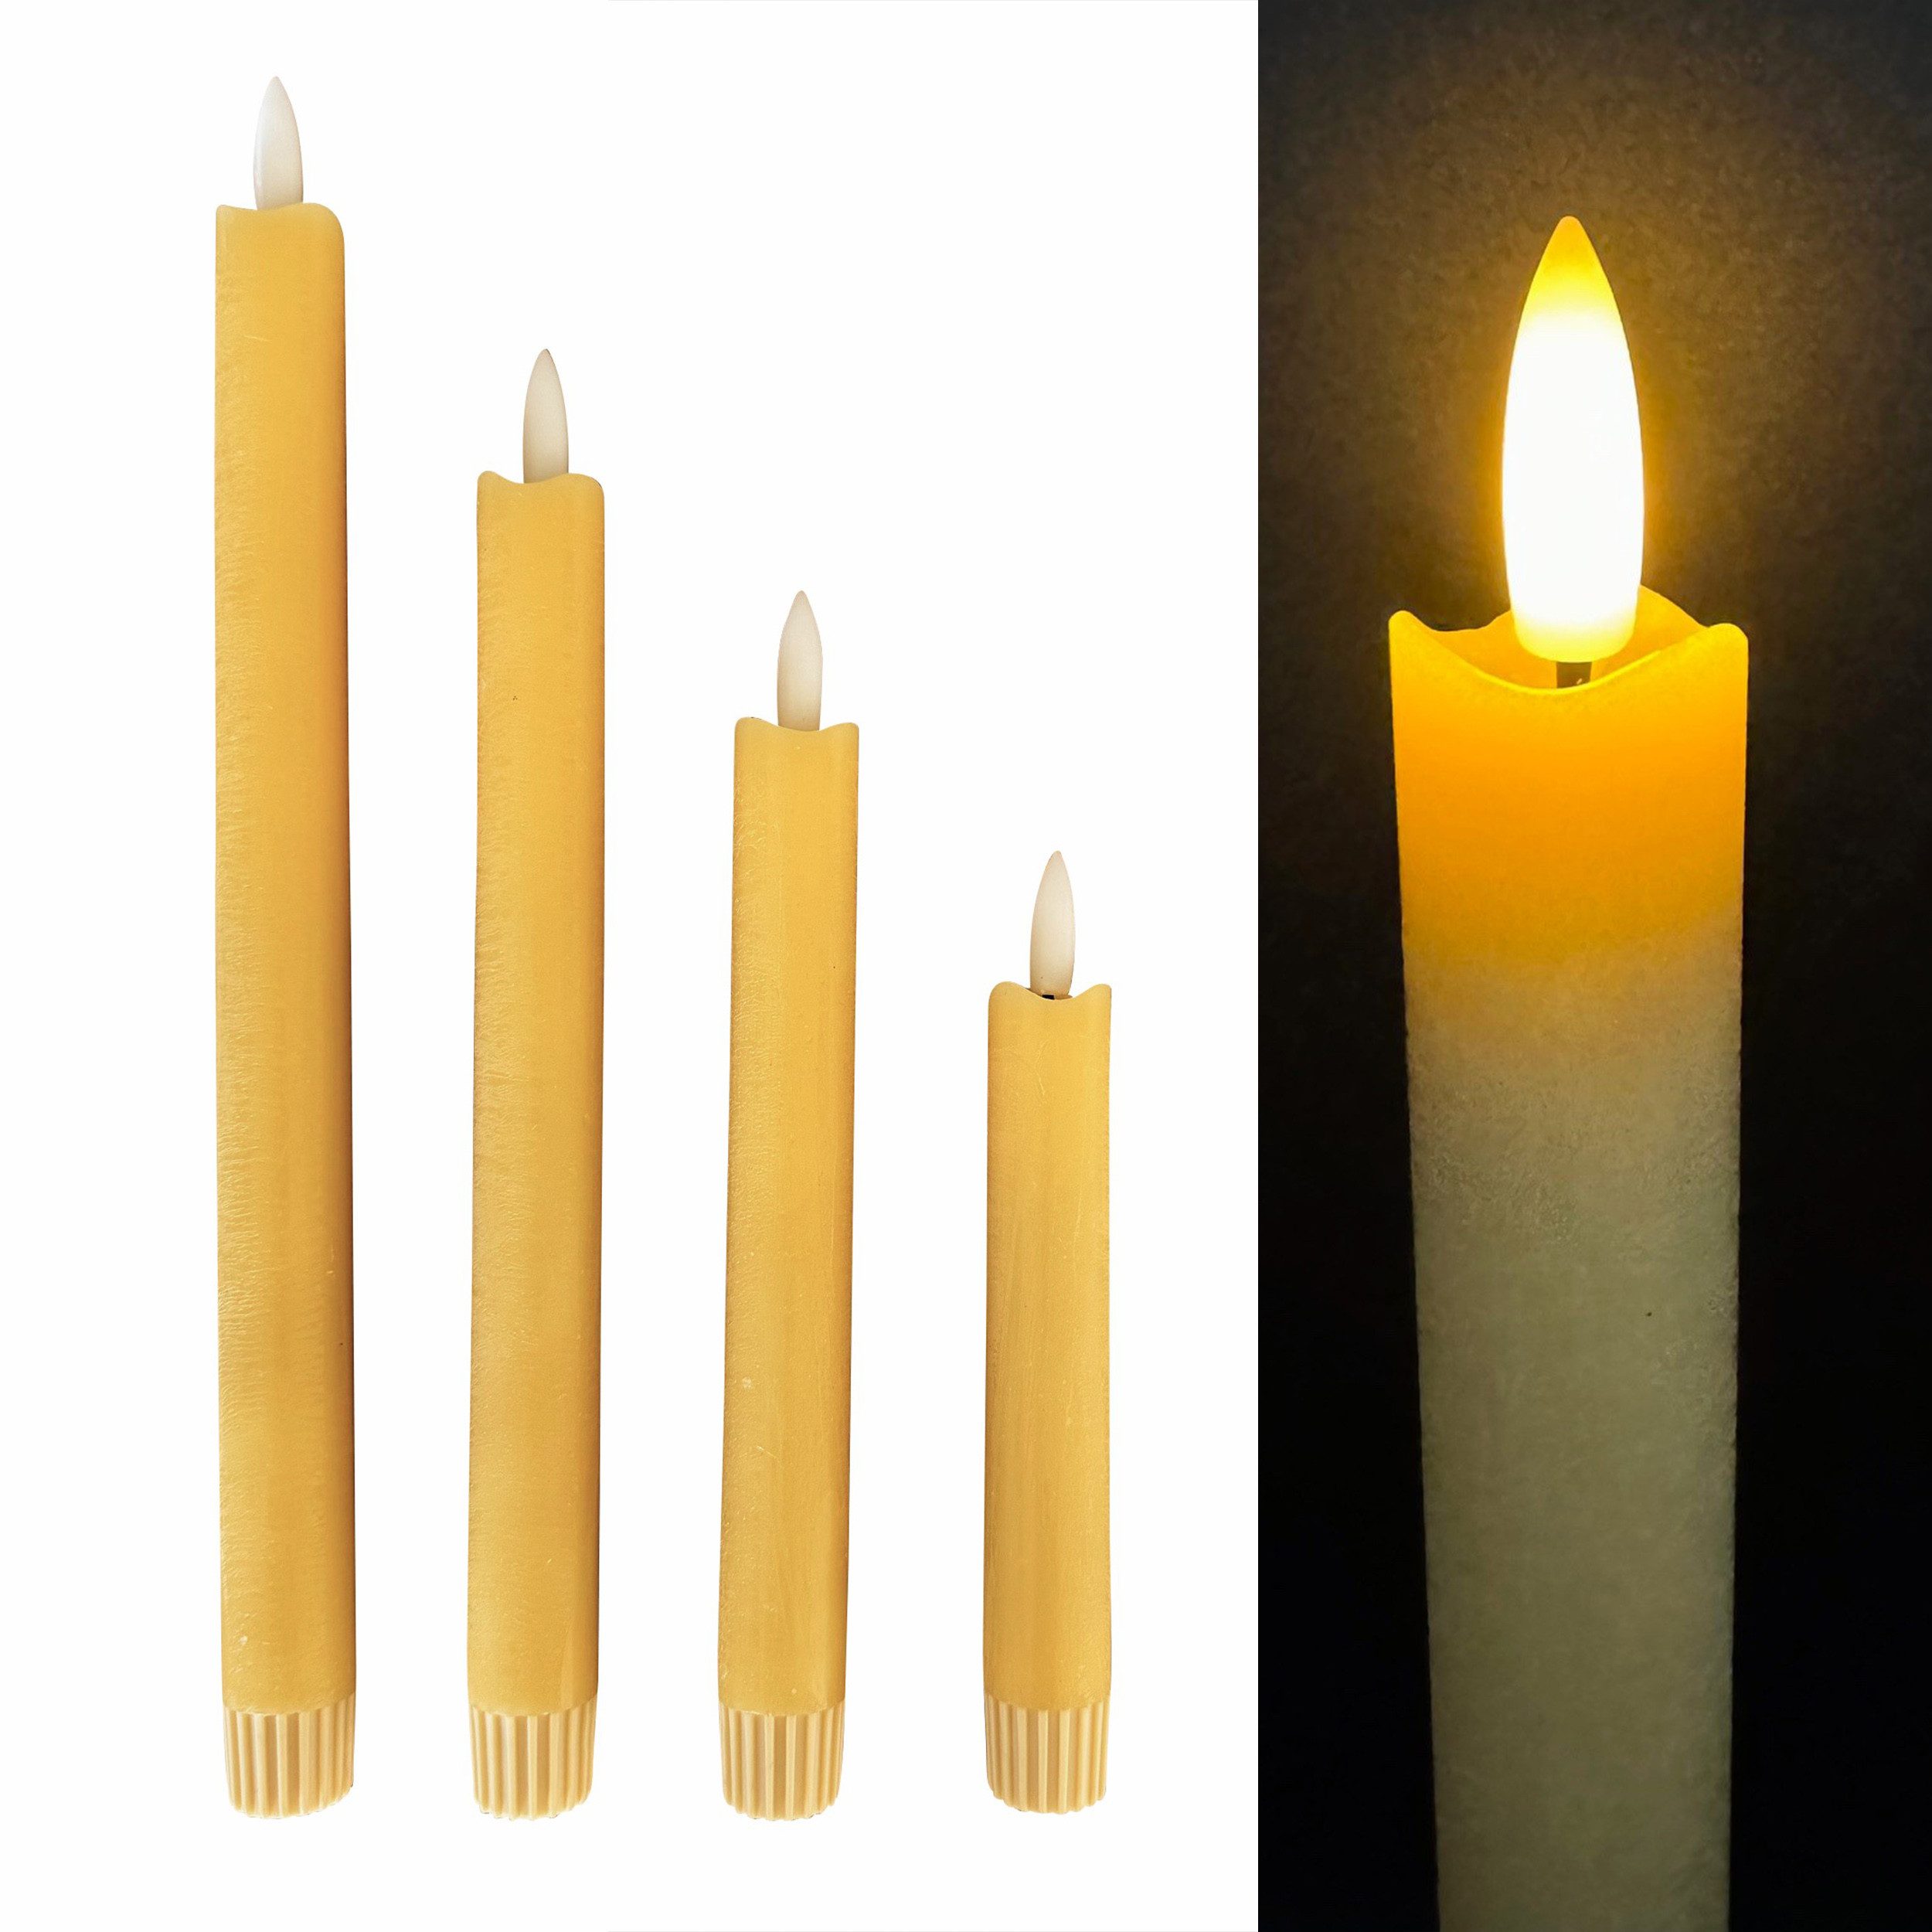 Online-Fuchs LED-Kerze 4 LED Stabkerzen in unterschiedlichen Höhen (Creme, Hellgrün, Gelb, Lachsrosa -, aus Echtwachs), 6-Stunden-Timerfunktion